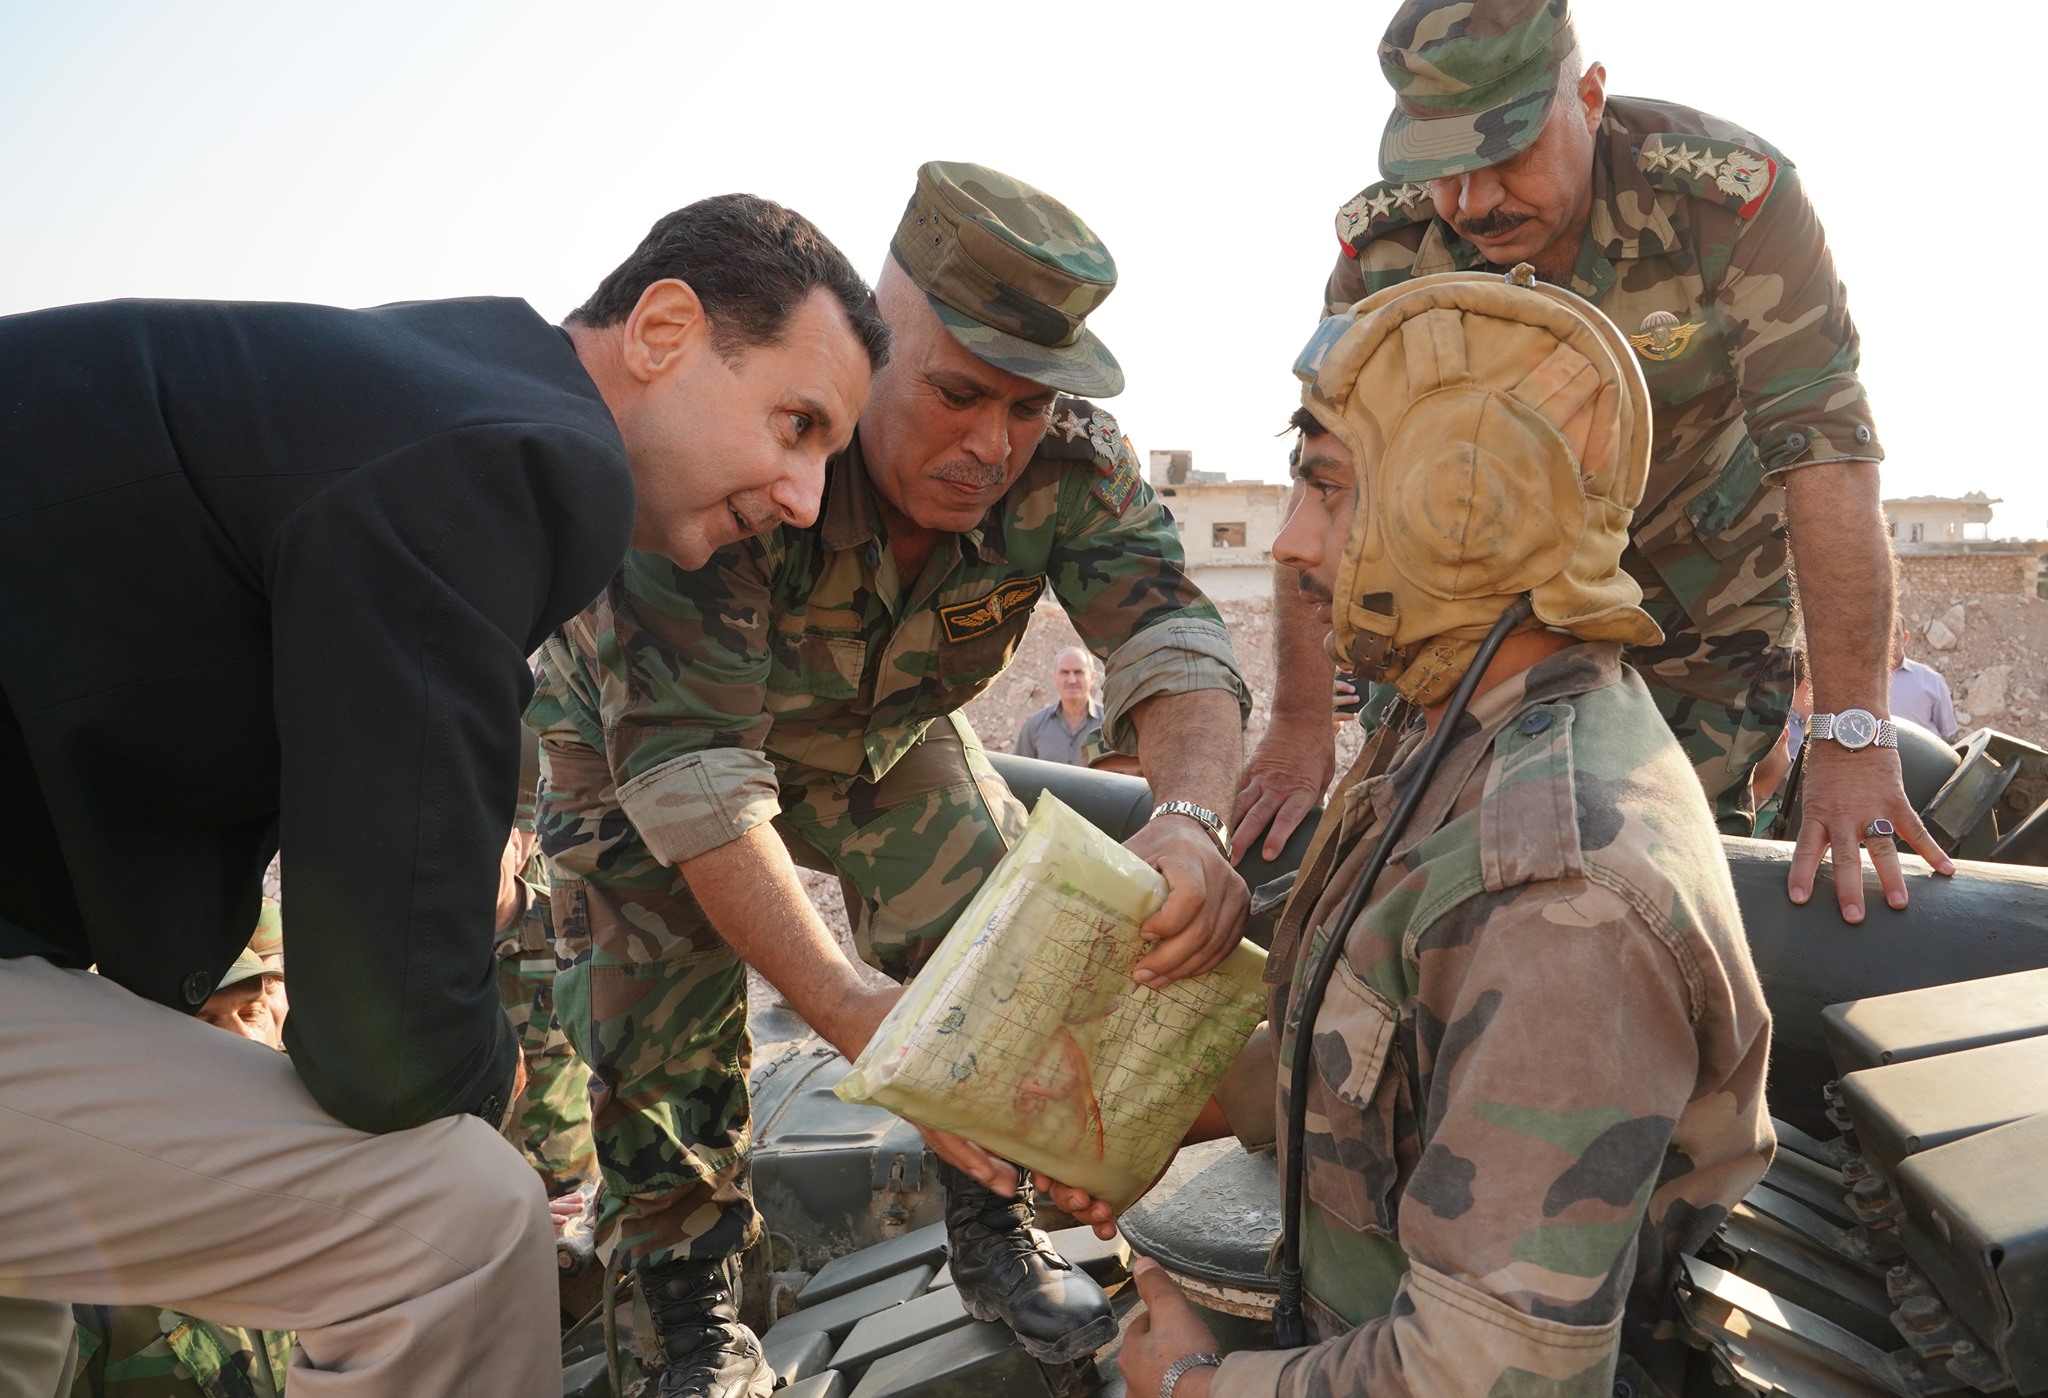 الرئيس الأسد يلتقي رجال الجيش على الخطوط الأمامية بريف إدلب: معركة إدلب هي الأساس لحسم الفوضى والإرهاب في كل مناطق سورية